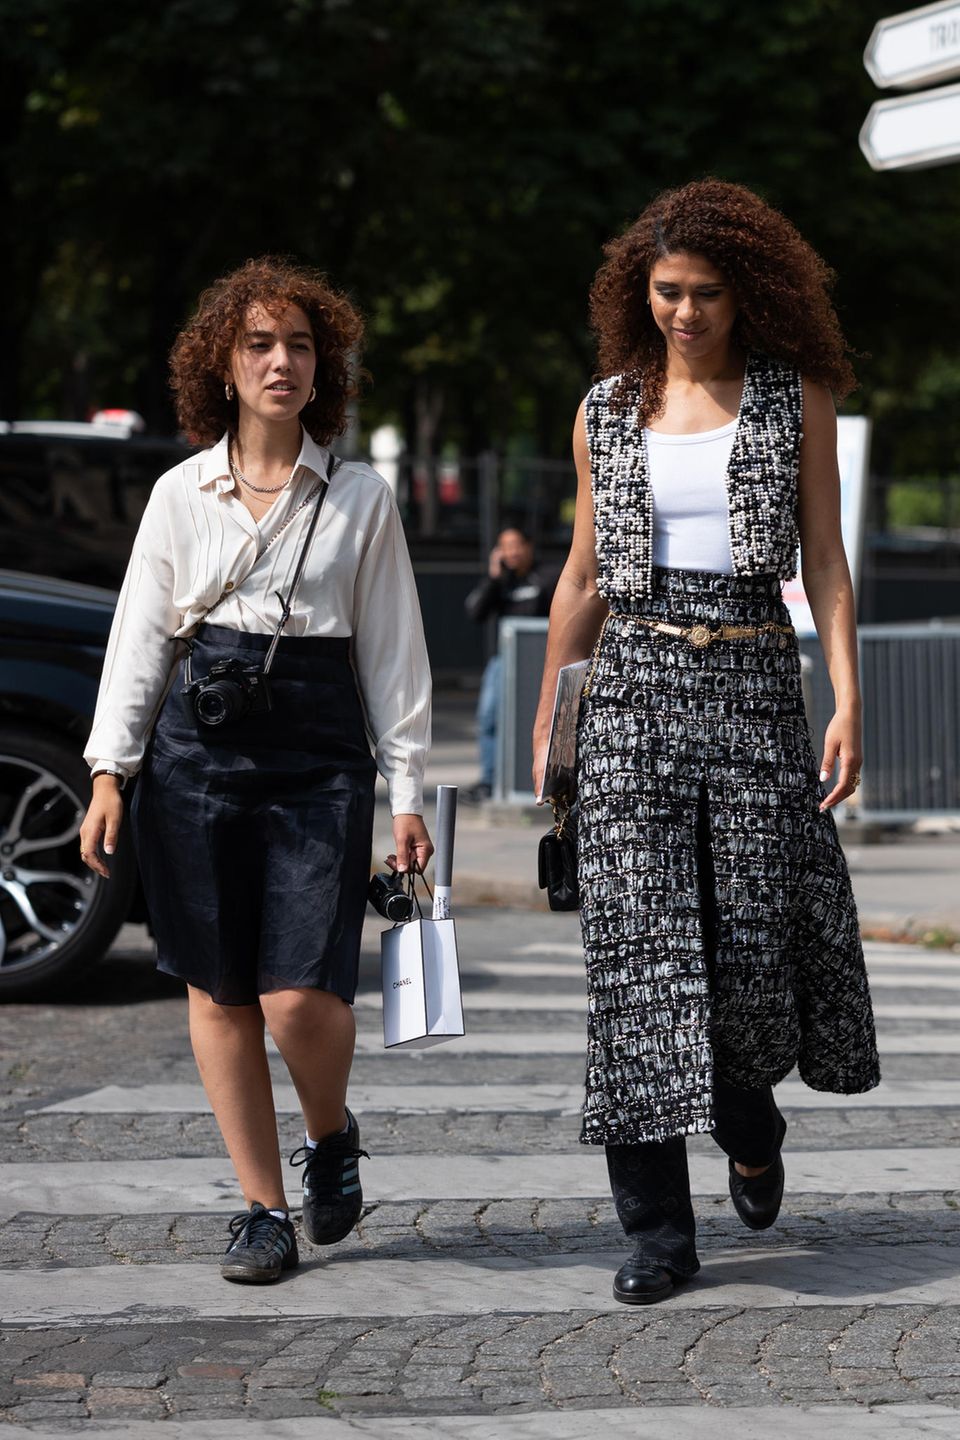 Dafür lieben wir Mode aus Paris: Es muss nicht immer alles glamourös und unbequem sein. Bei der Haute Couture Show von Chanel erhaschen wir zwei lässige Kombinationen von Midi- und Maxi-Röcken. Eine Sache darf bei den Französinnen nicht fehlen: die flachen Schuhe. Damit kommen sie gut von A nach B und zu den dicken Materialien der Röcke gut kombiniert. 